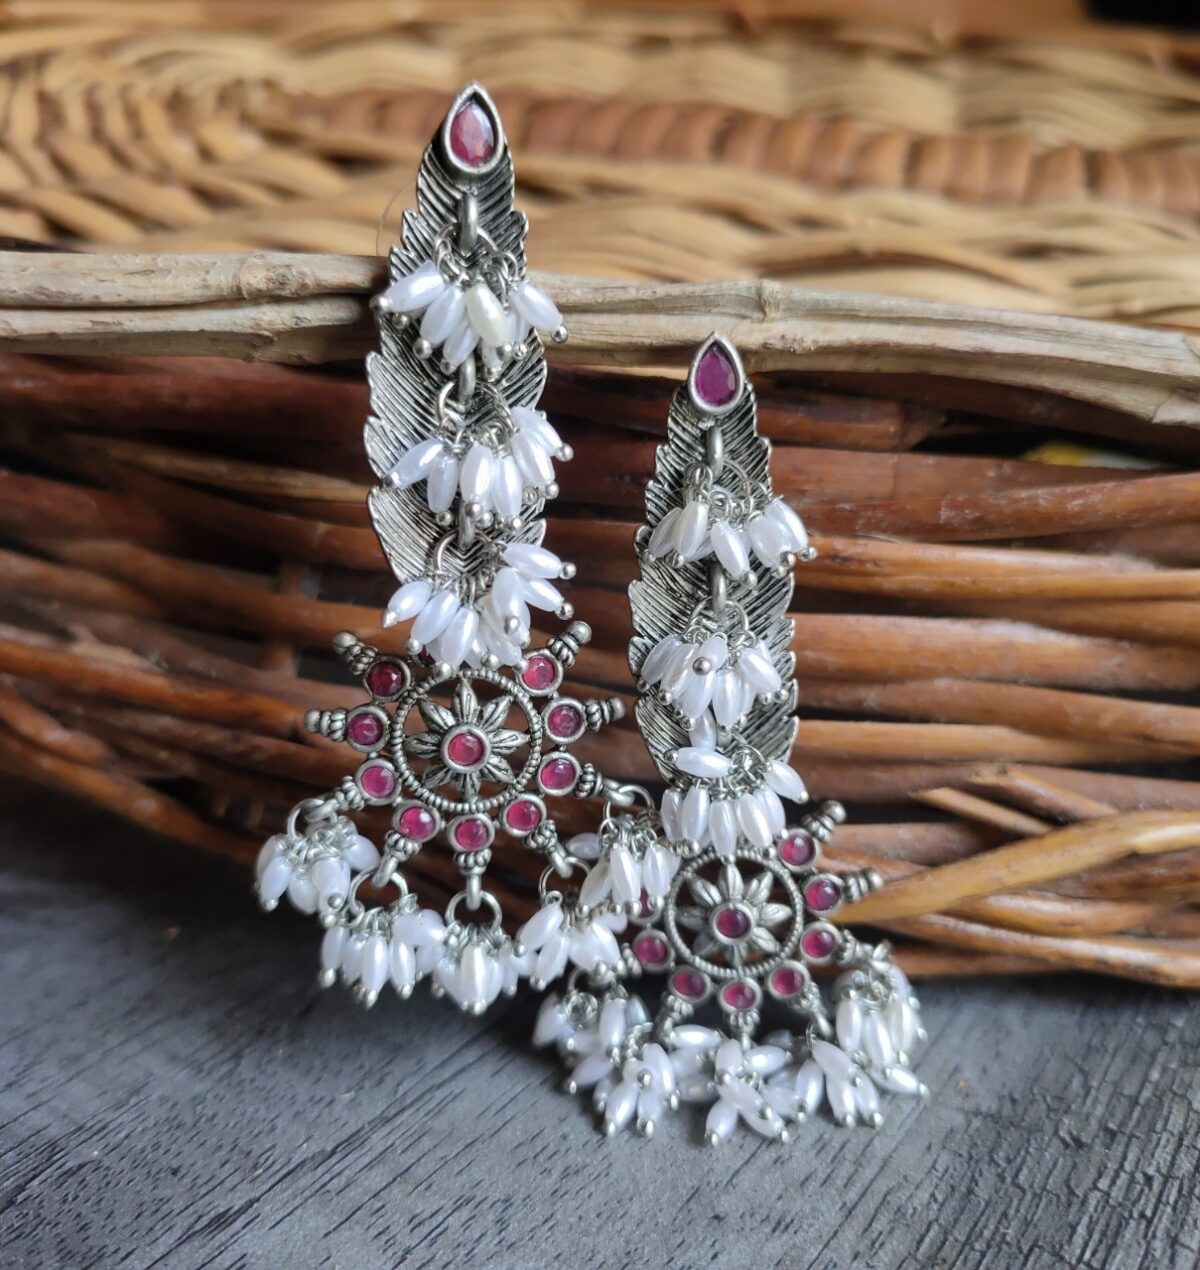 oxidised jewelry earrings